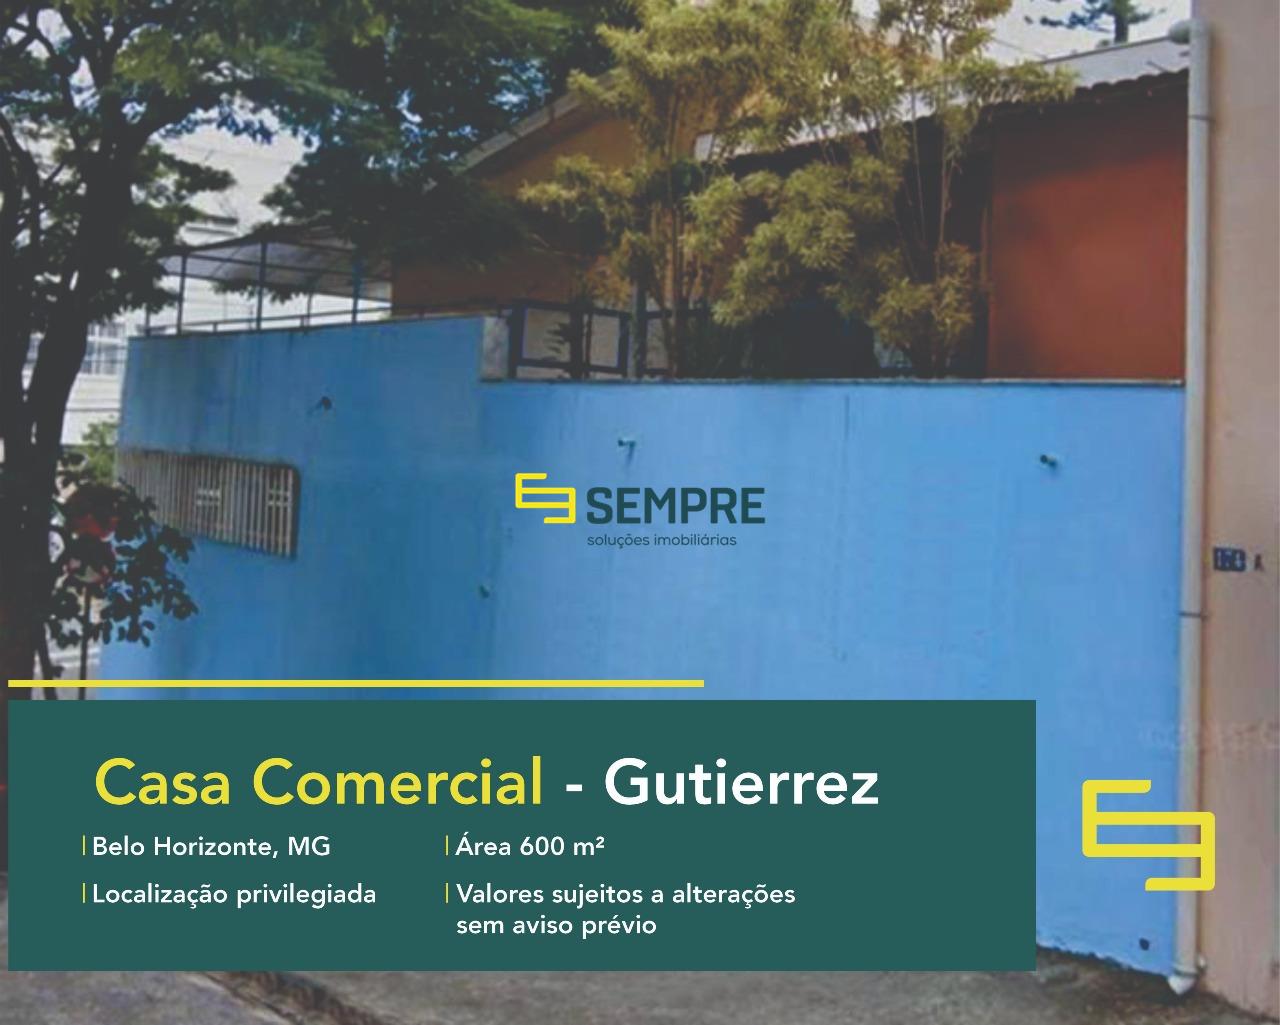 Casa comercial para alugar no bairro Gutierrez em Belo Horizonte, excelente localização. O estabelecimento comercial conta com área de 600 m²